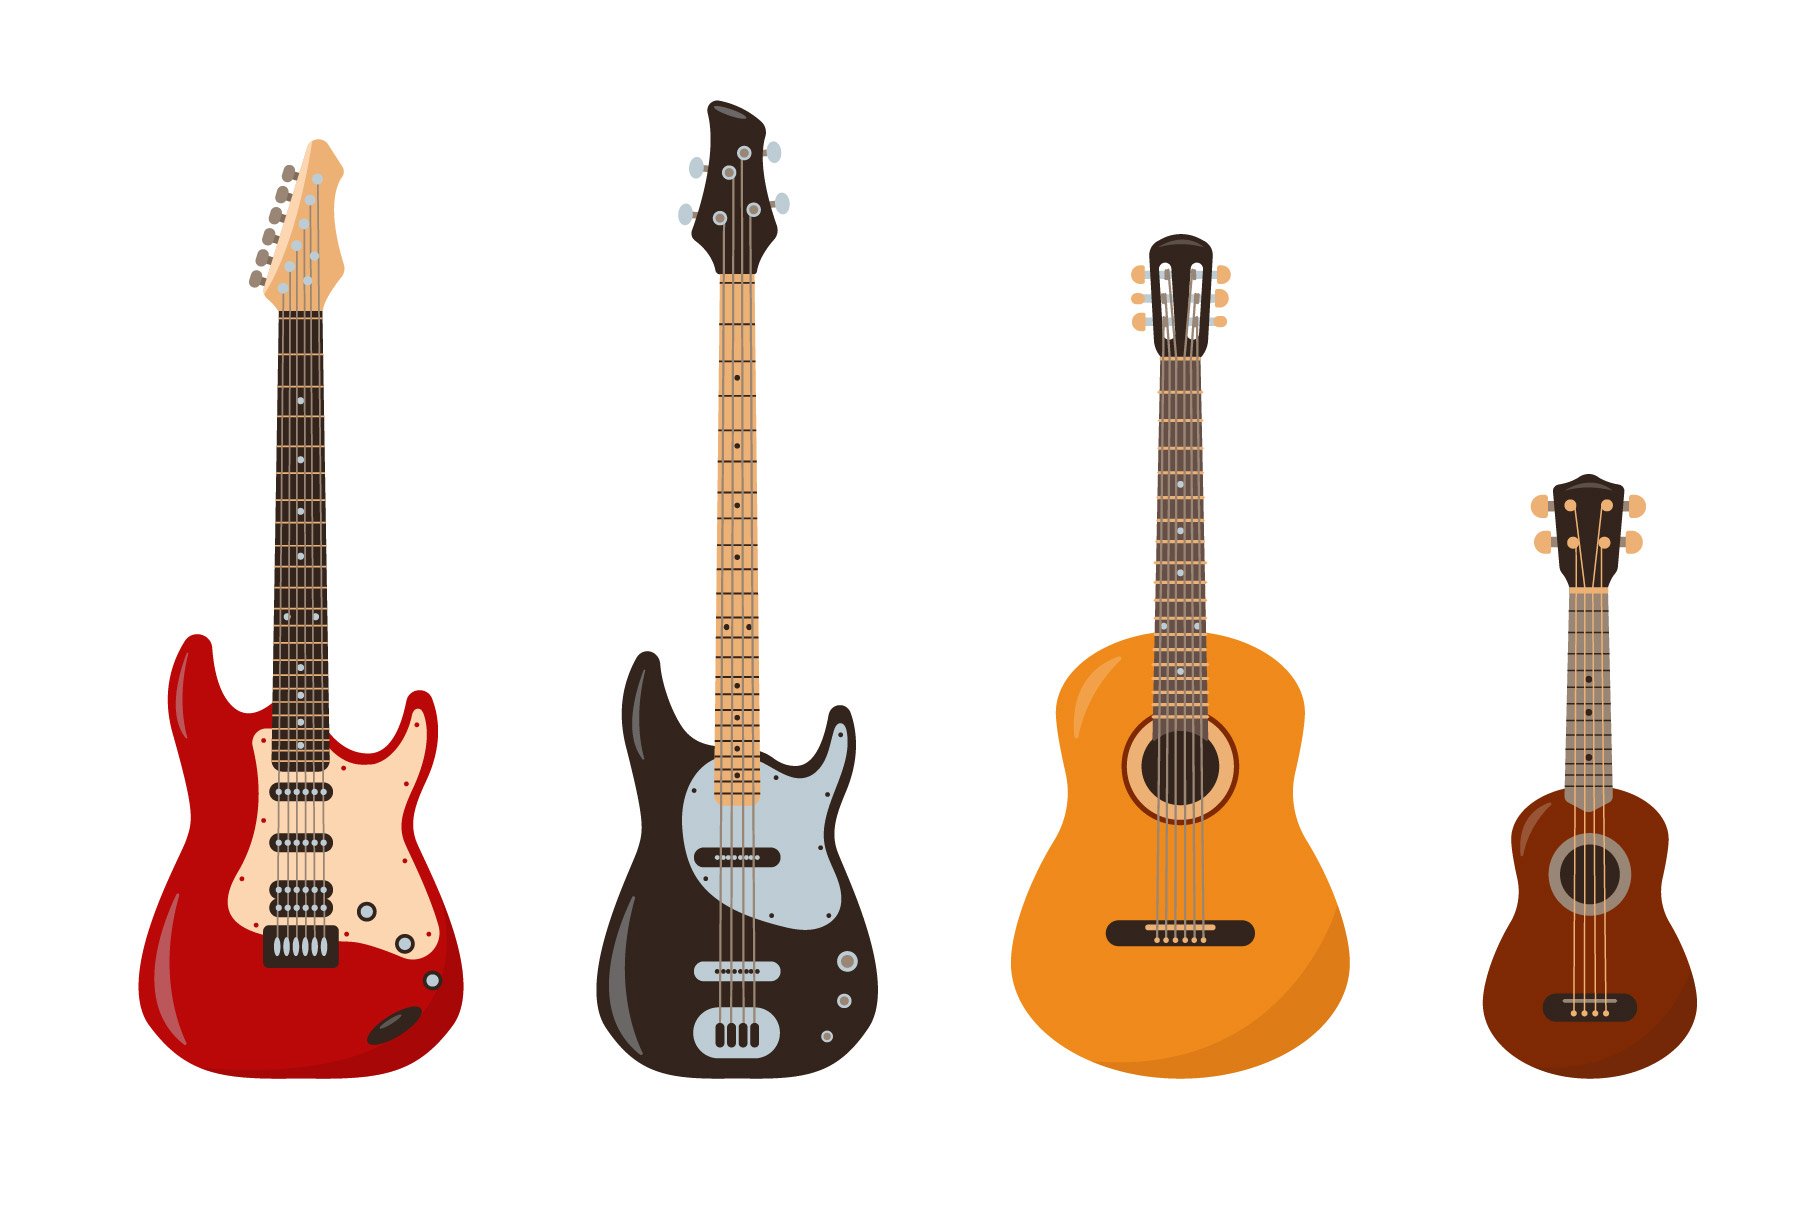 Cool guitars set.